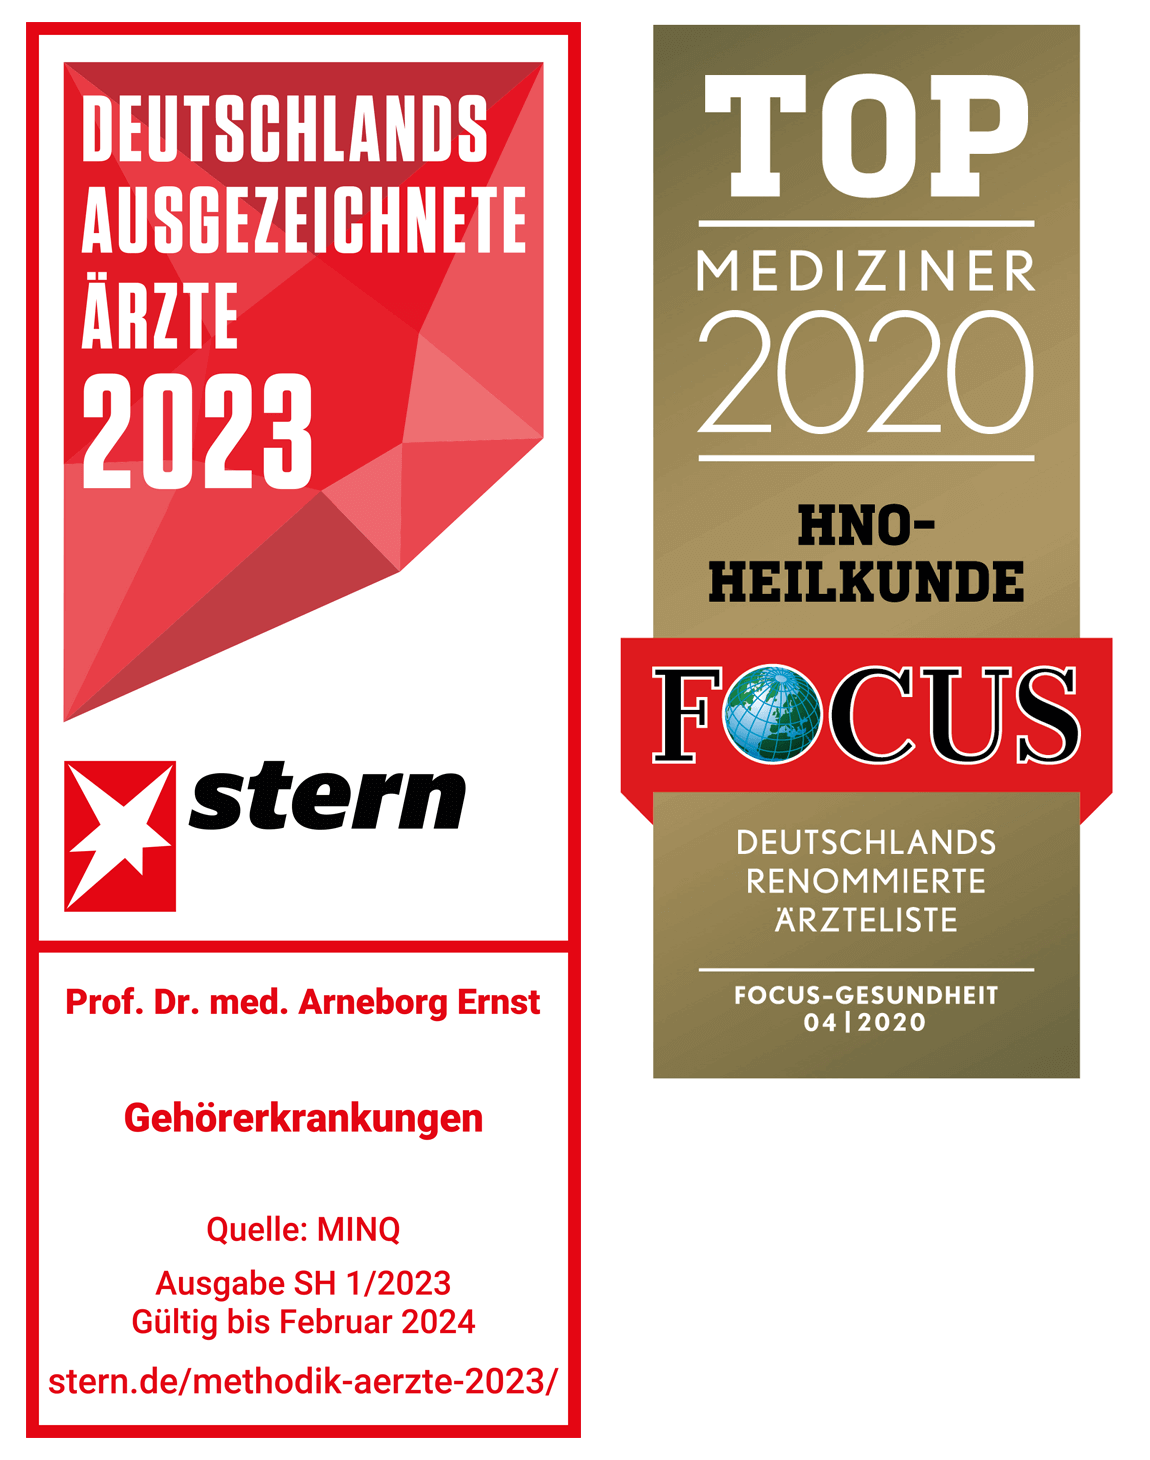 Focus Top Mediziner 2022 Siegel und Urkunde ausgezeichneter Spezialist für Gehörerkrankungen 2022/2023